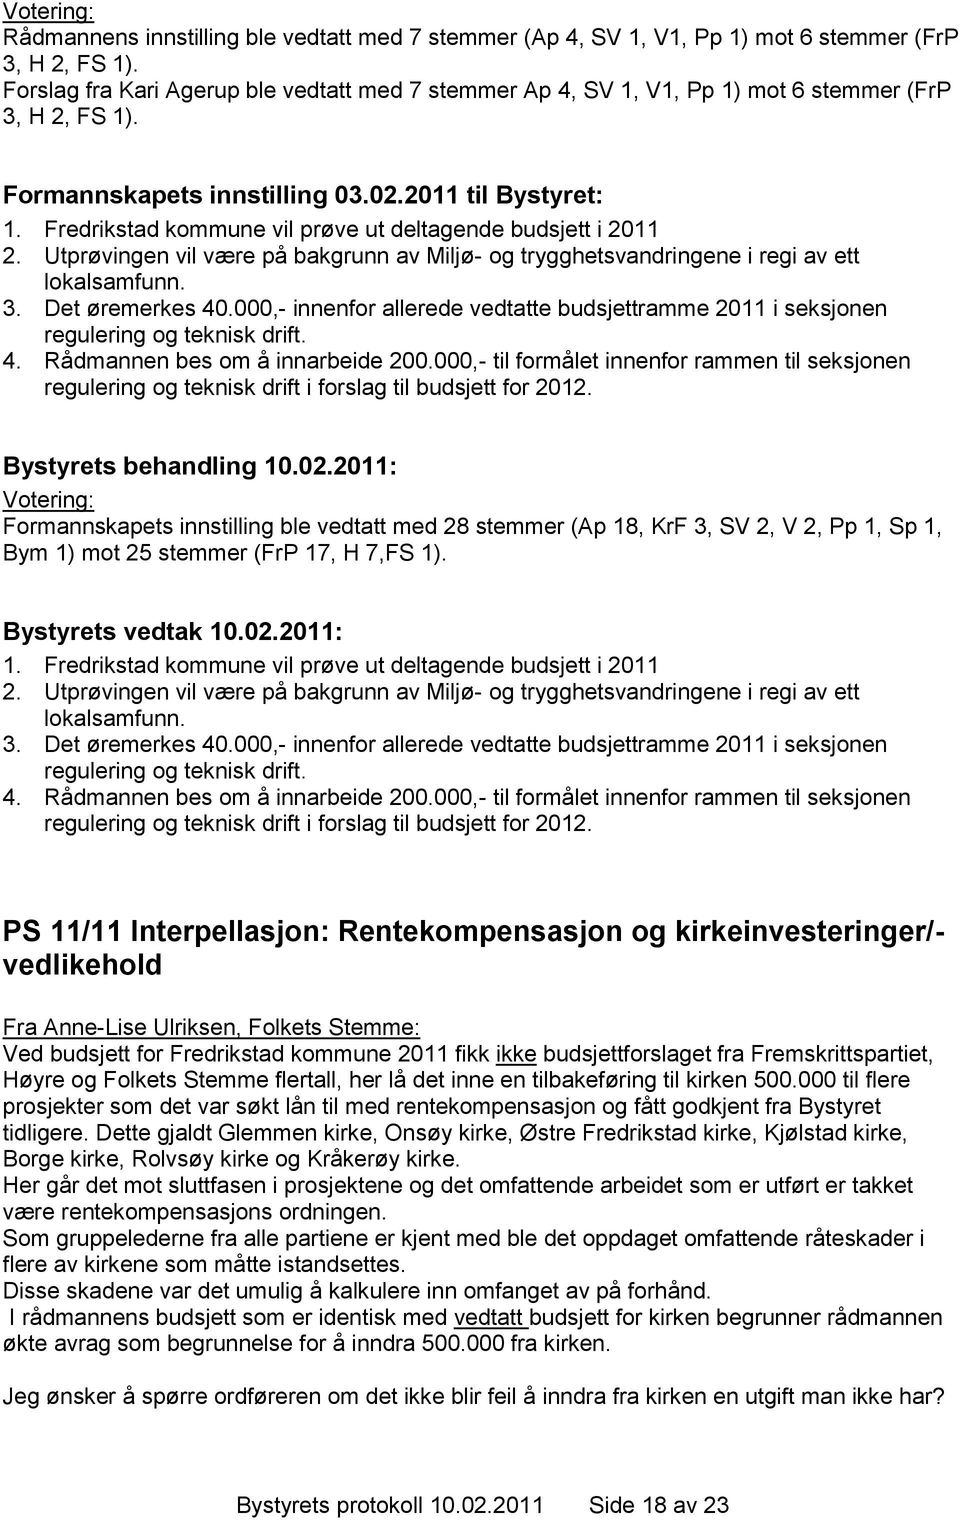 Fredrikstad kommune vil prøve ut deltagende budsjett i 2011 2. Utprøvingen vil være på bakgrunn av Miljø- og trygghetsvandringene i regi av ett lokalsamfunn. 3. Det øremerkes 40.